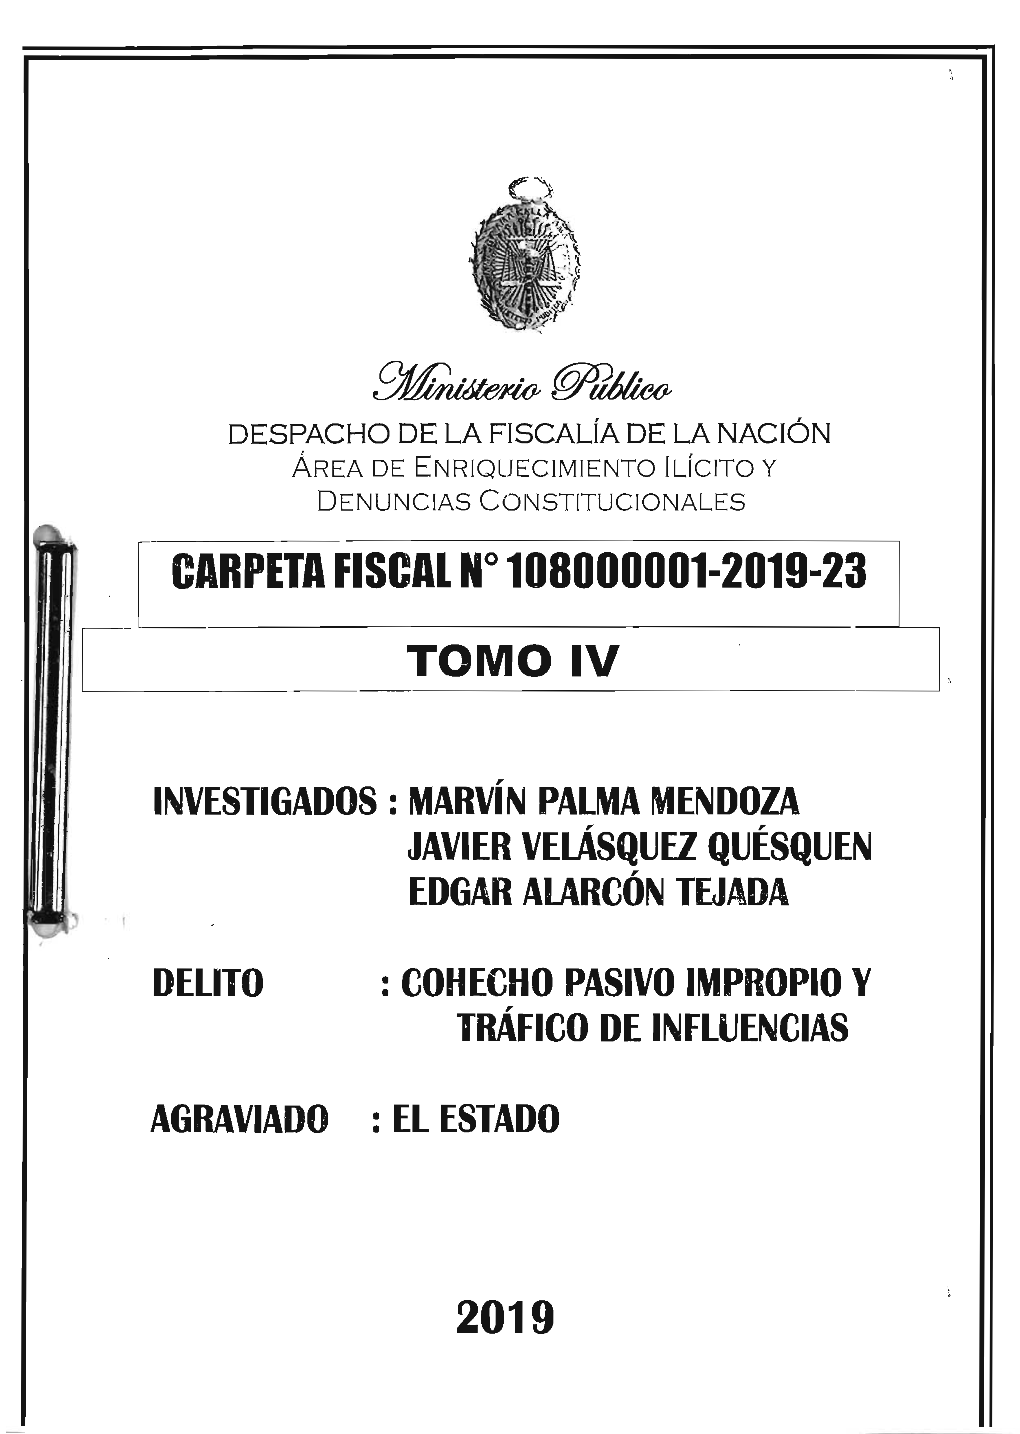 Aql~- CARPETA FISCAL No 108000001-2019-23 TOMO IV